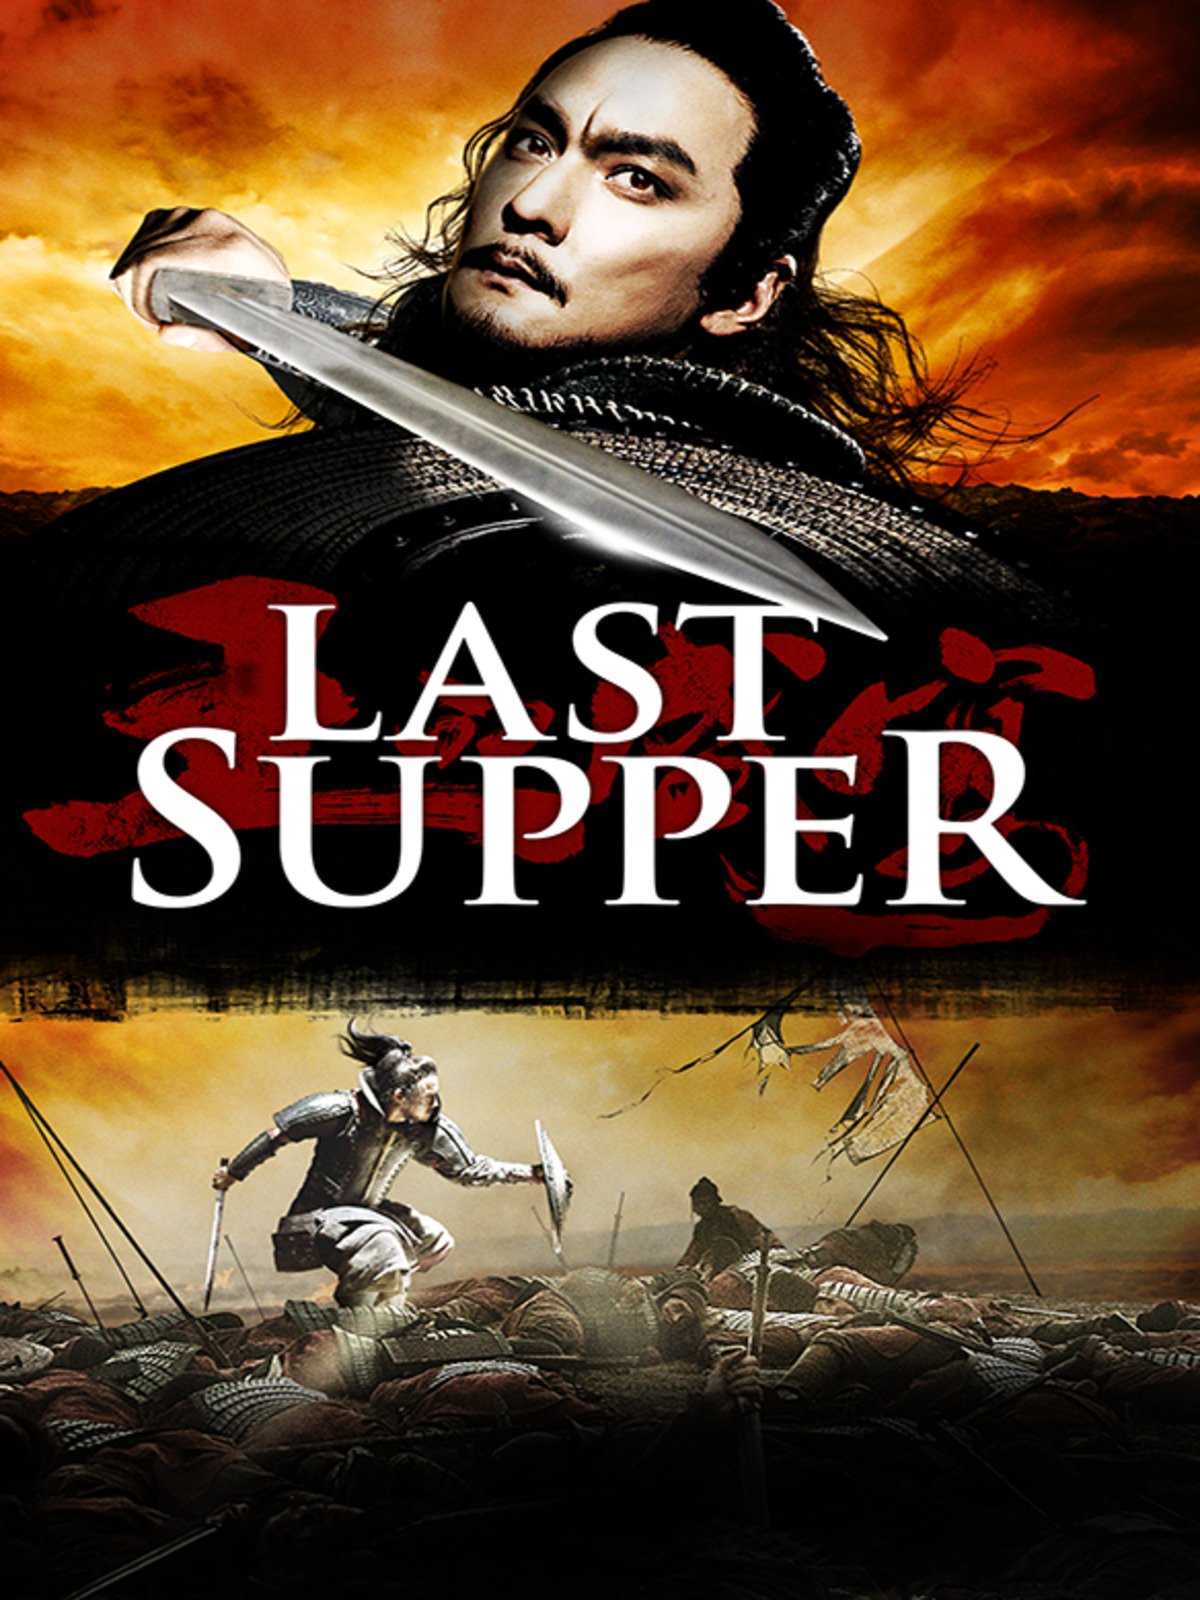 ดูหนัง The Last Supper 2013 ฌ้อป๋าอ๋อง มหากาพย์ลำน้ำเลือด movie2uhd